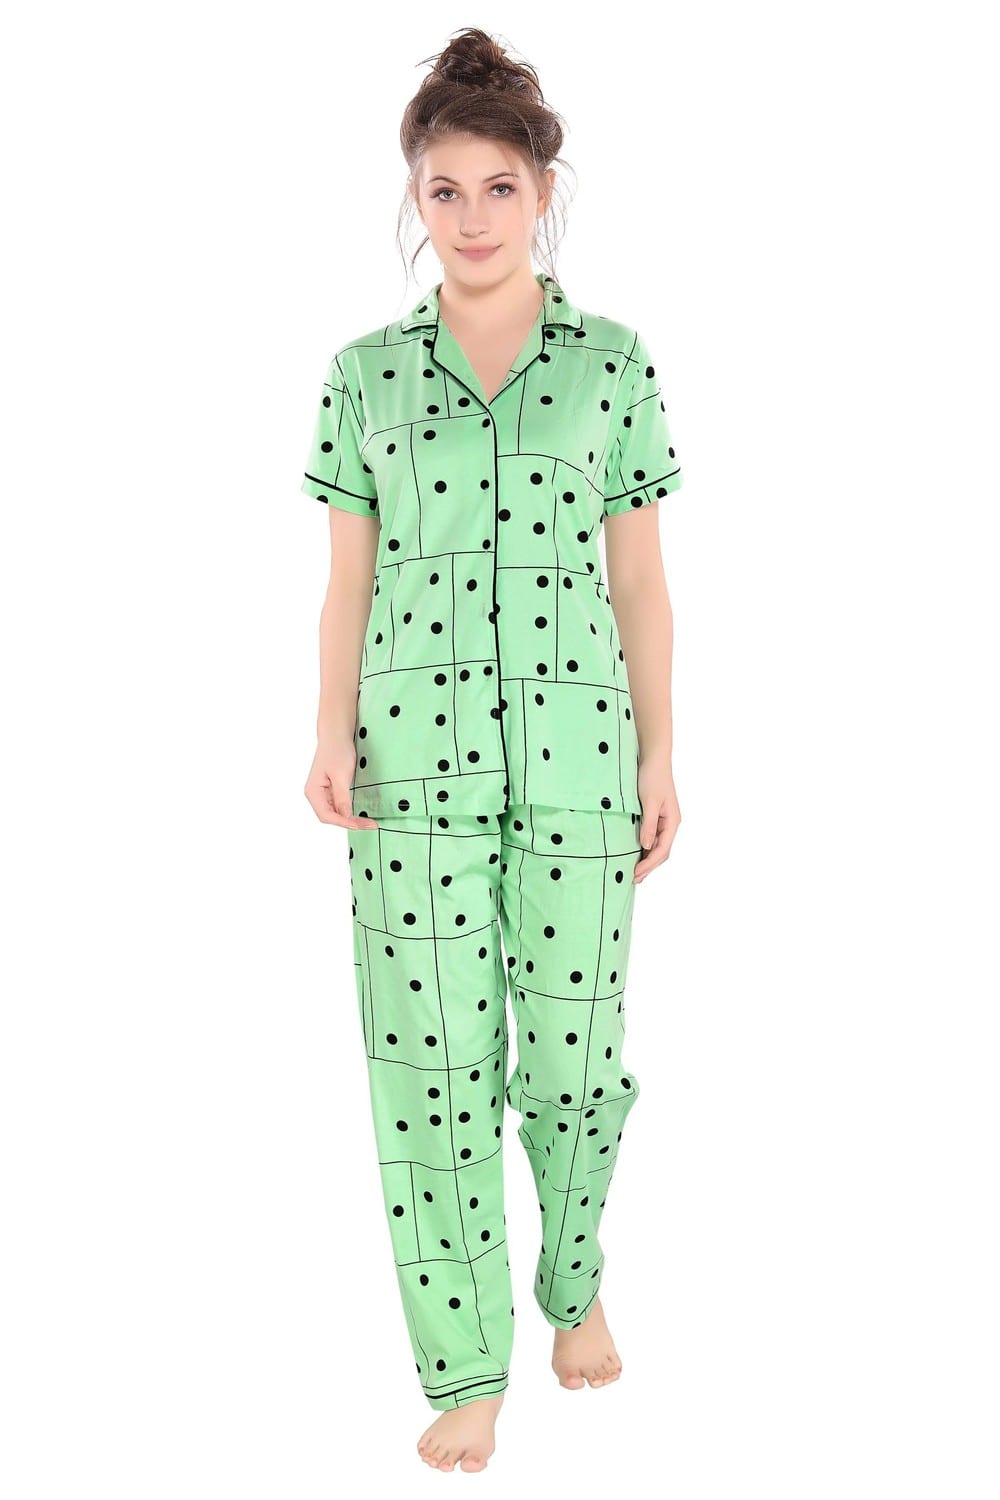 Pierre Donna Women's Cotton Pajama set With Pants - Women Sleepwear Green Color - Dealz Souq